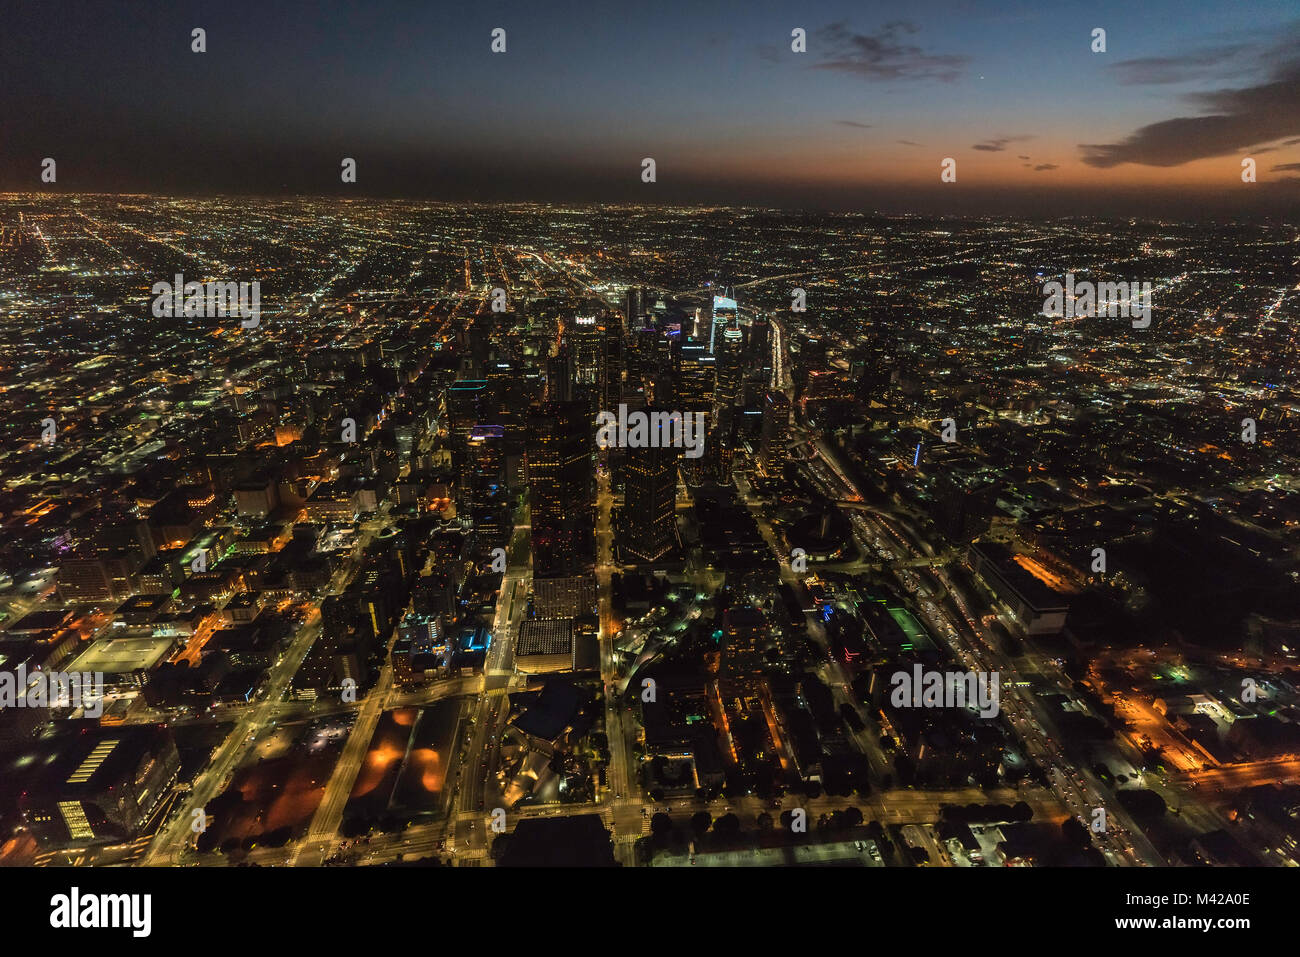 Los Angeles, Californie, USA - 11 Février 2018 : nuit vue aérienne de bâtiments urbains et les rues du centre-ville en Californie du Sud. Banque D'Images